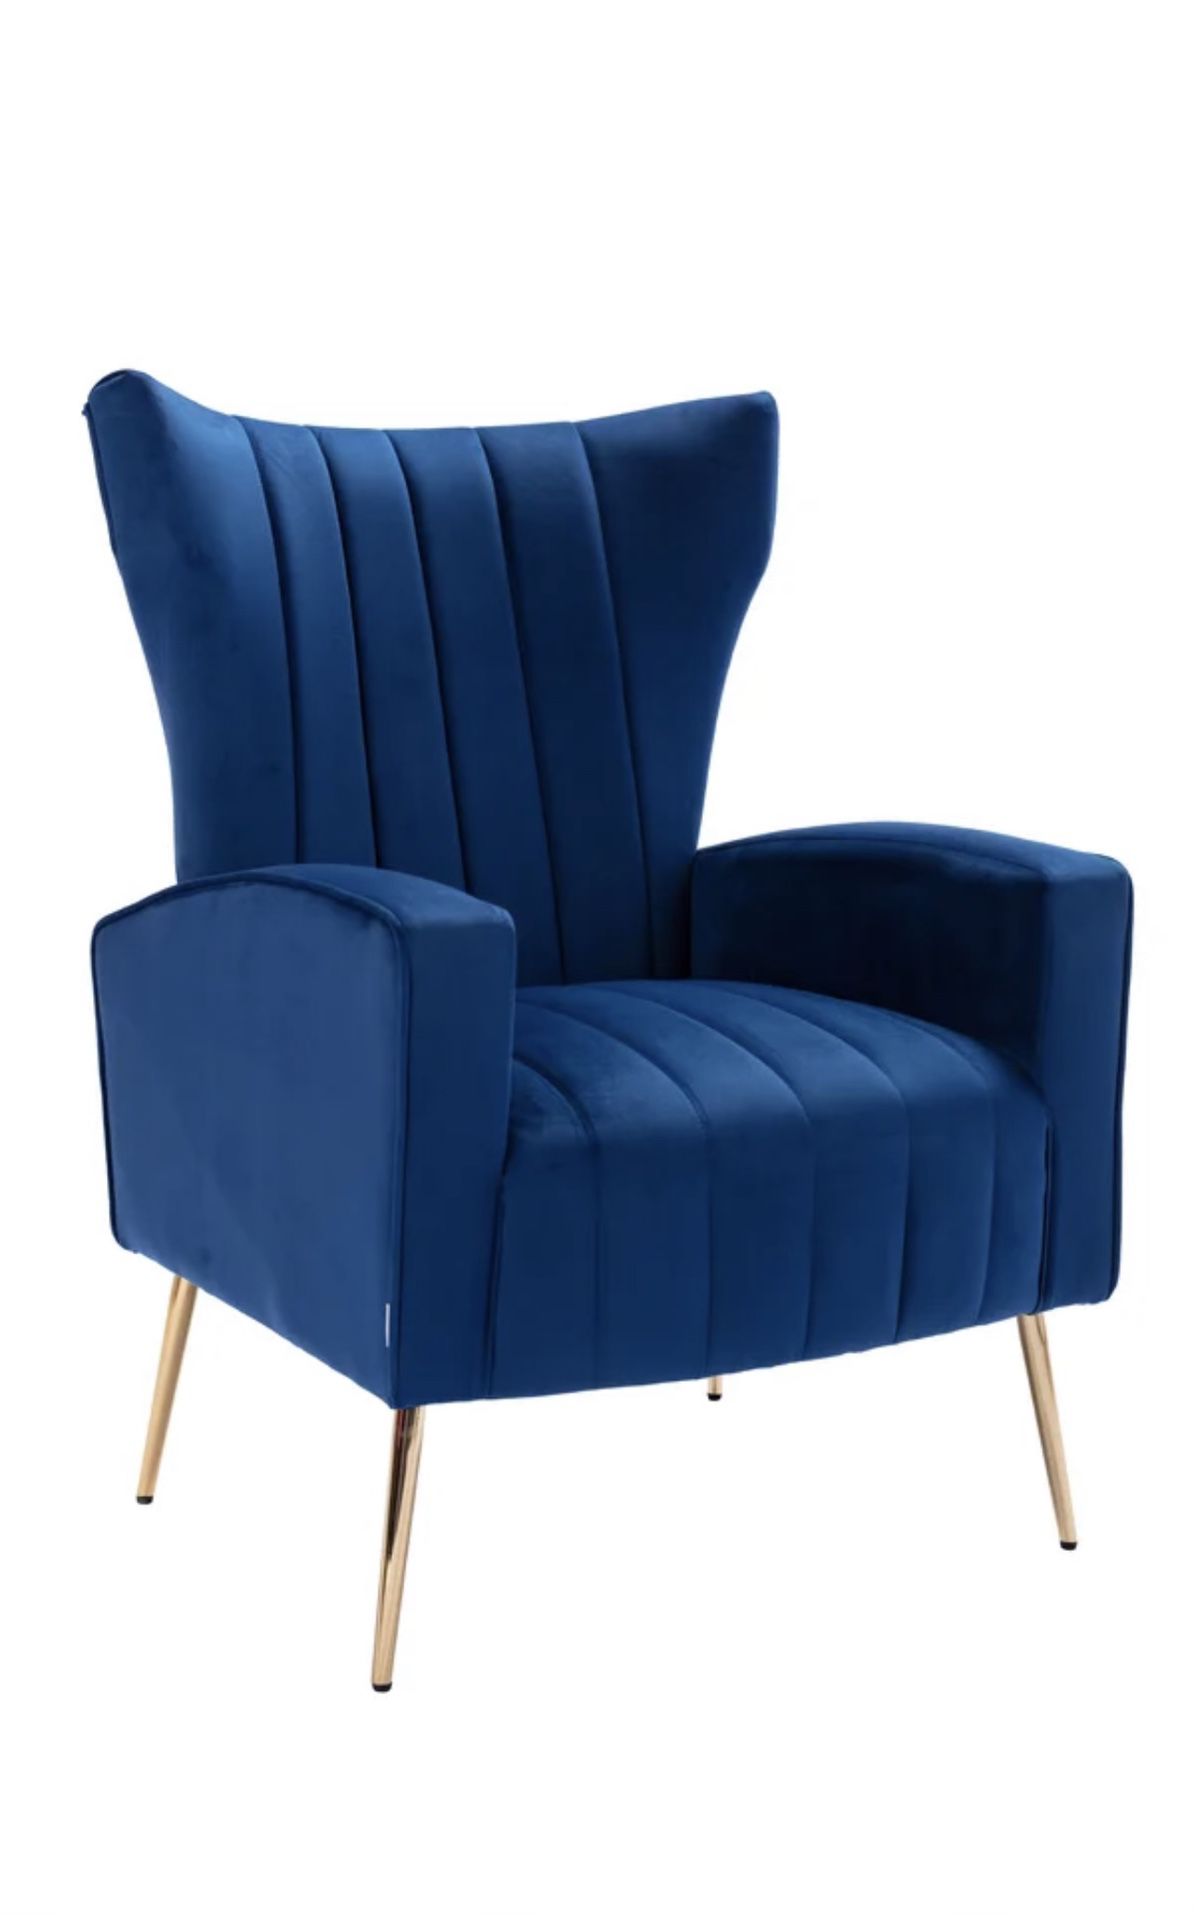 Brand new Royal Blue Velvet Arm Chair